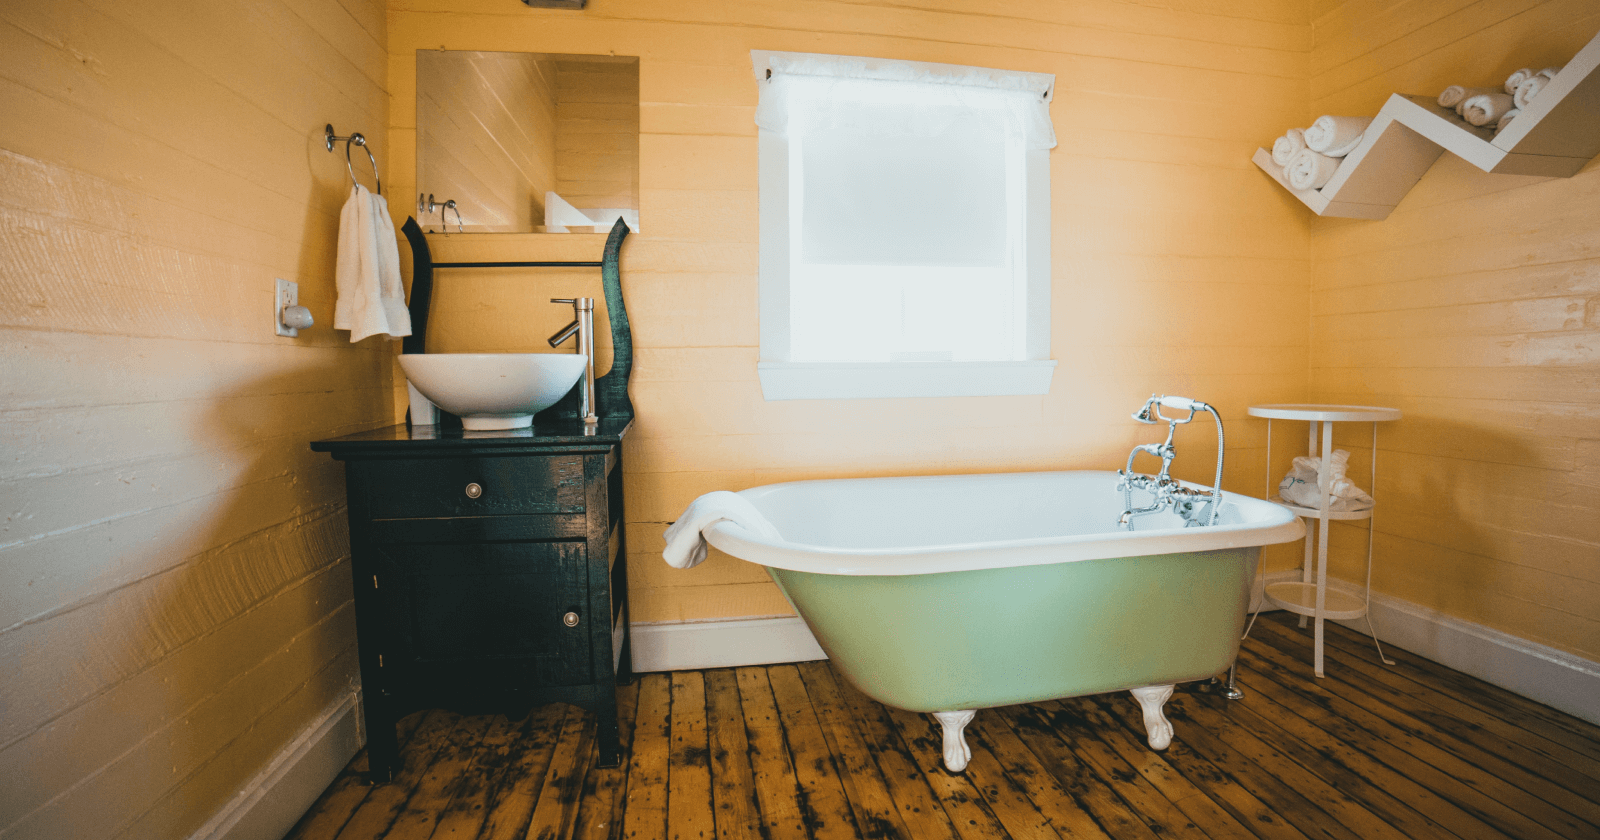 Bathroom with Clawfoot Tub and Wood Floor